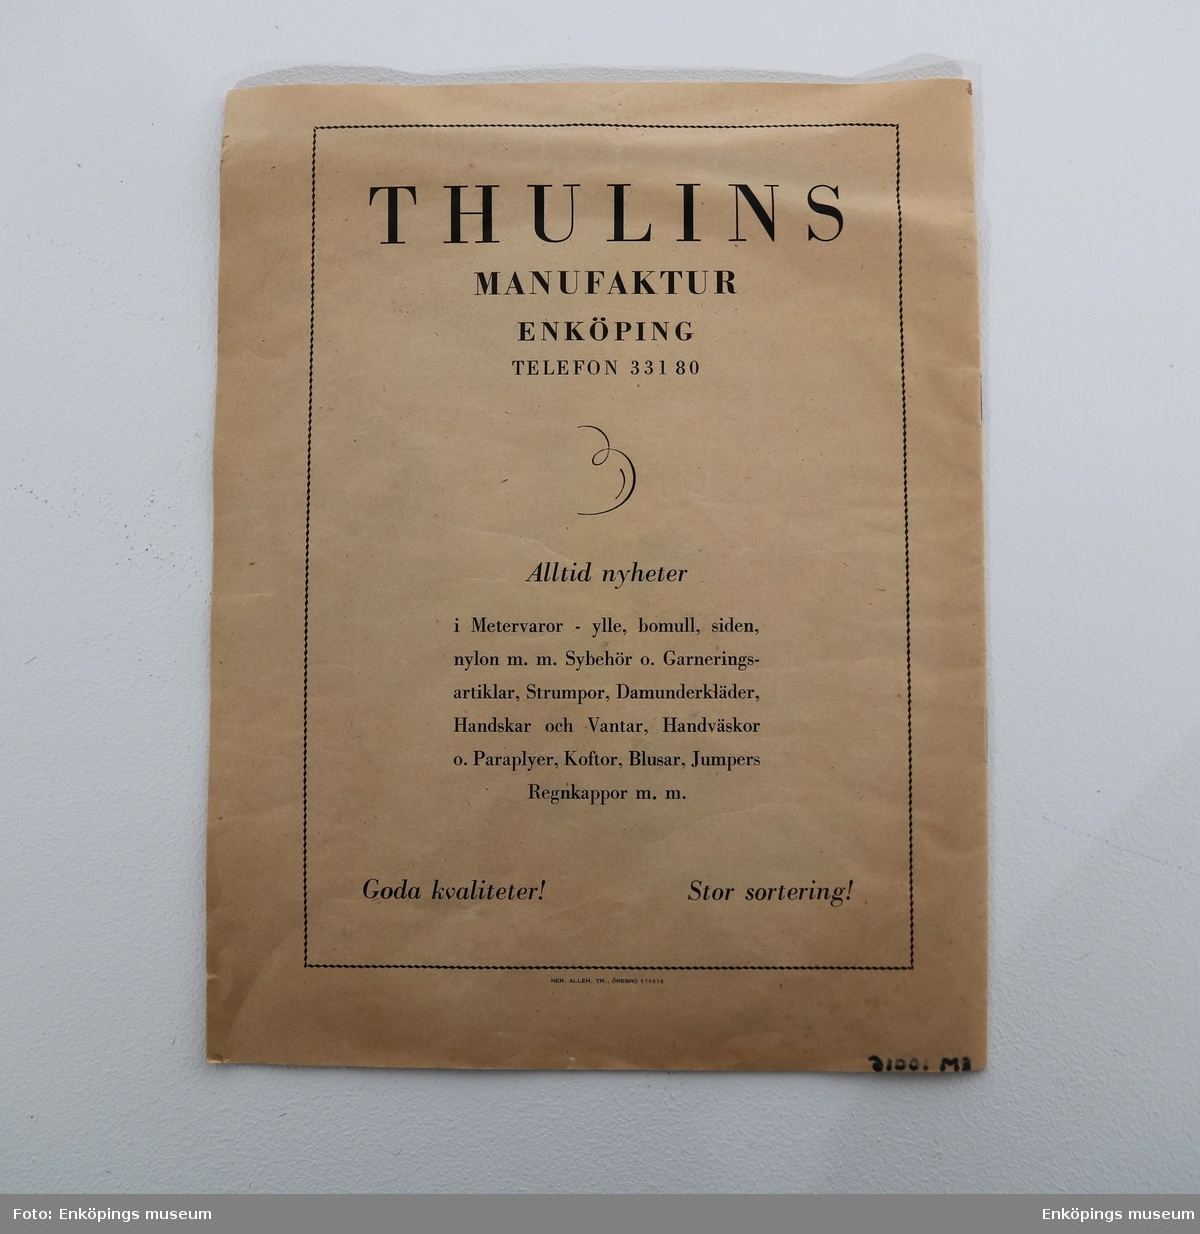 Modekatalog från Thulins Manufaktur Enköping Tele 33180. Katalogen är på franska med svartvita bilder. Det enda färgen som finns i katalogen är orange. Tryckt i Örebro.